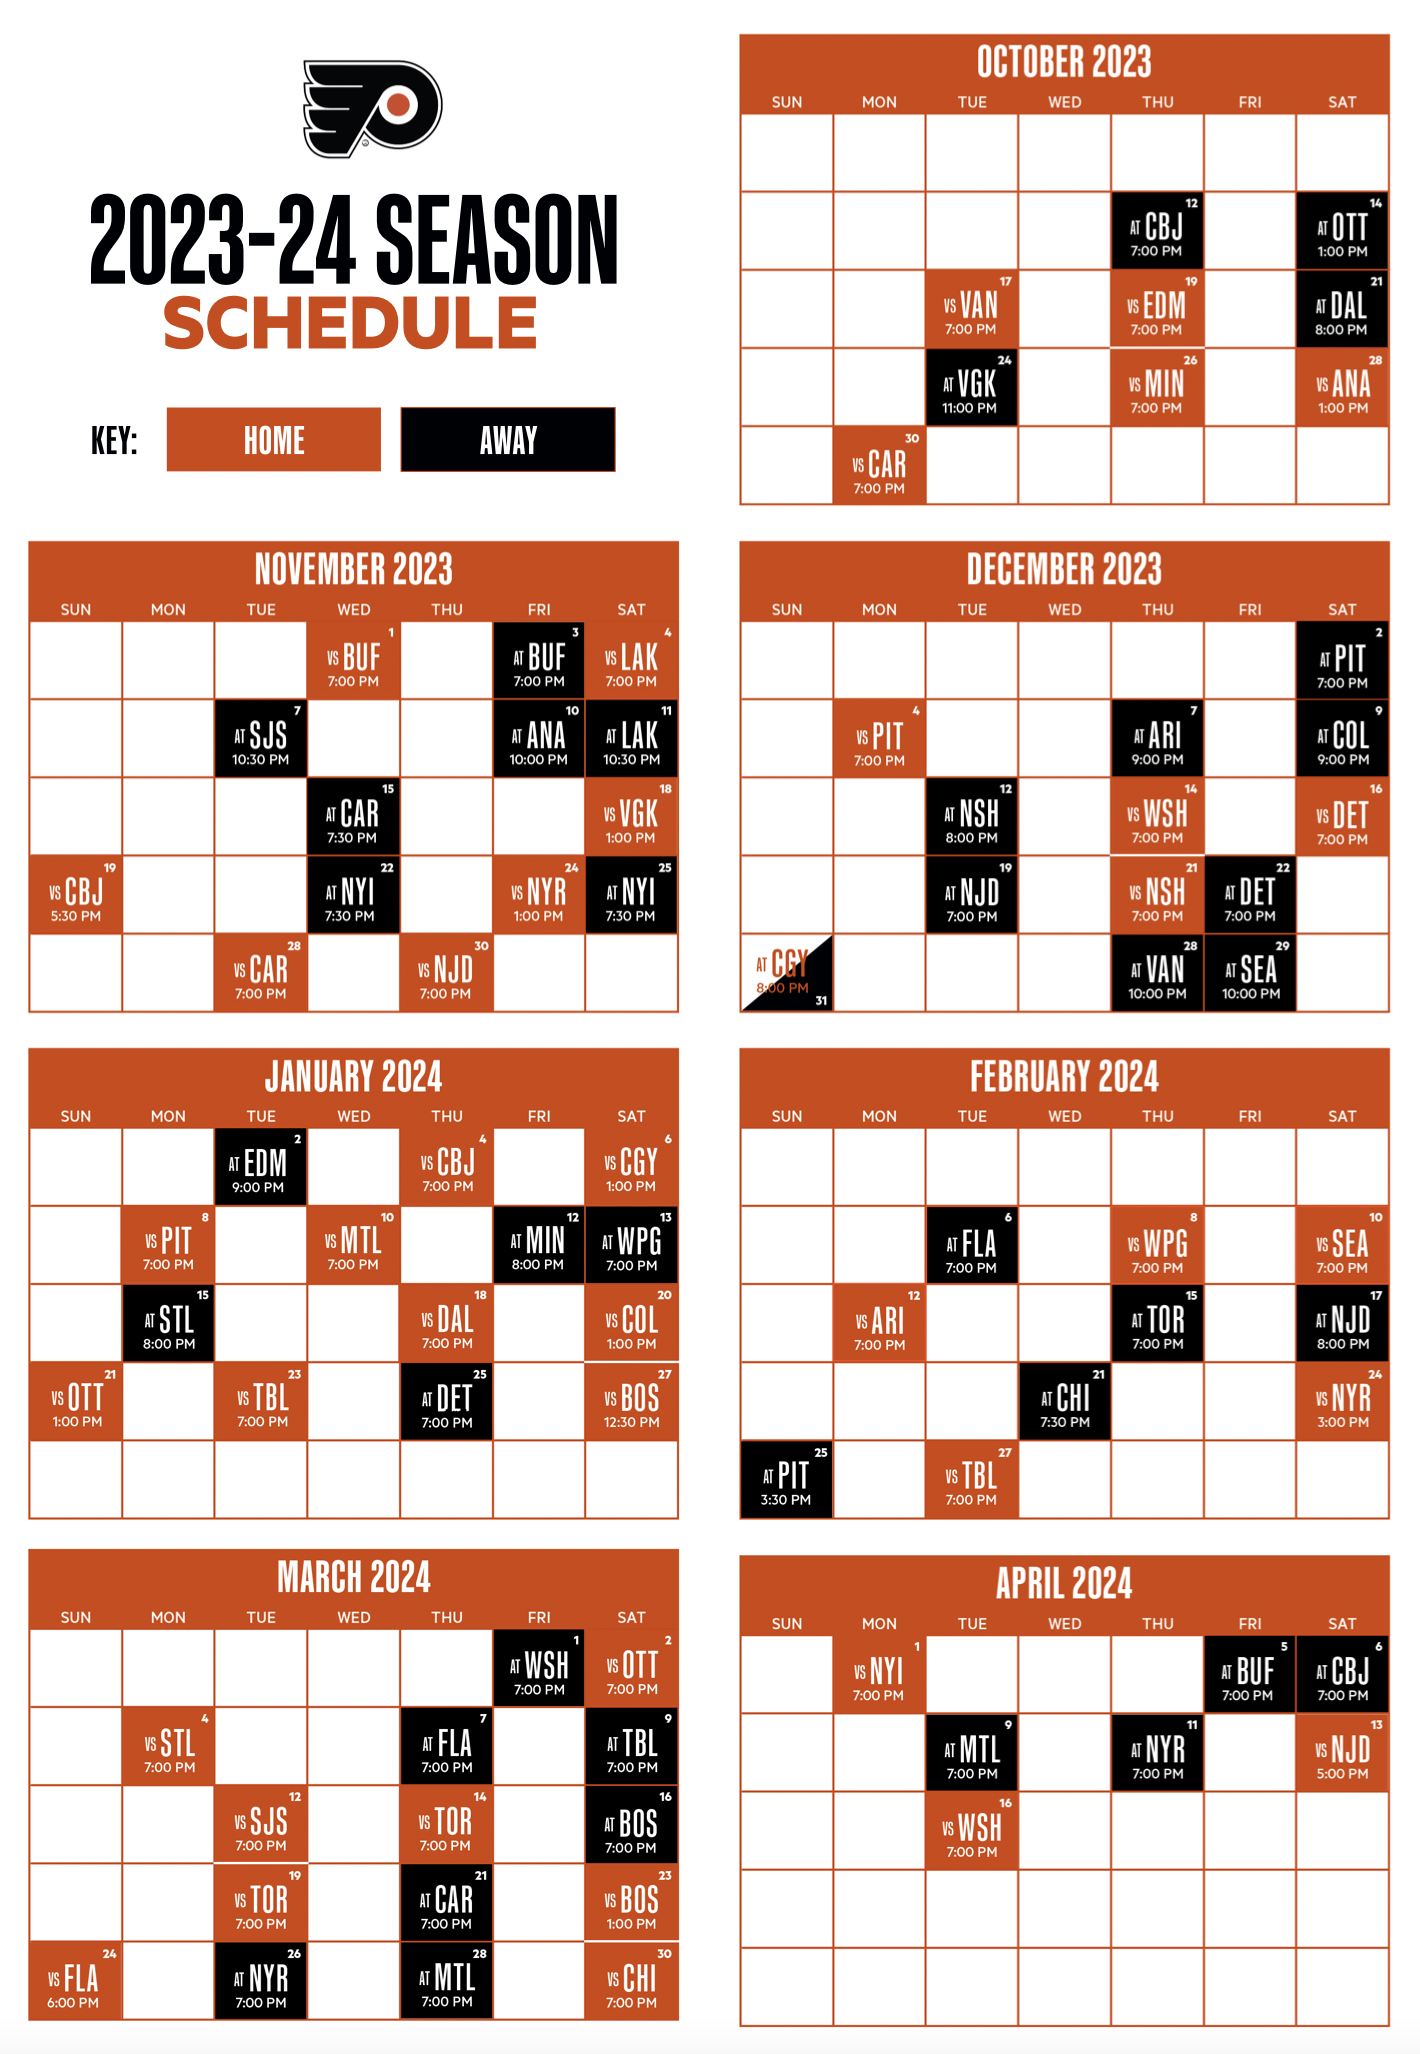 Flyers schedule